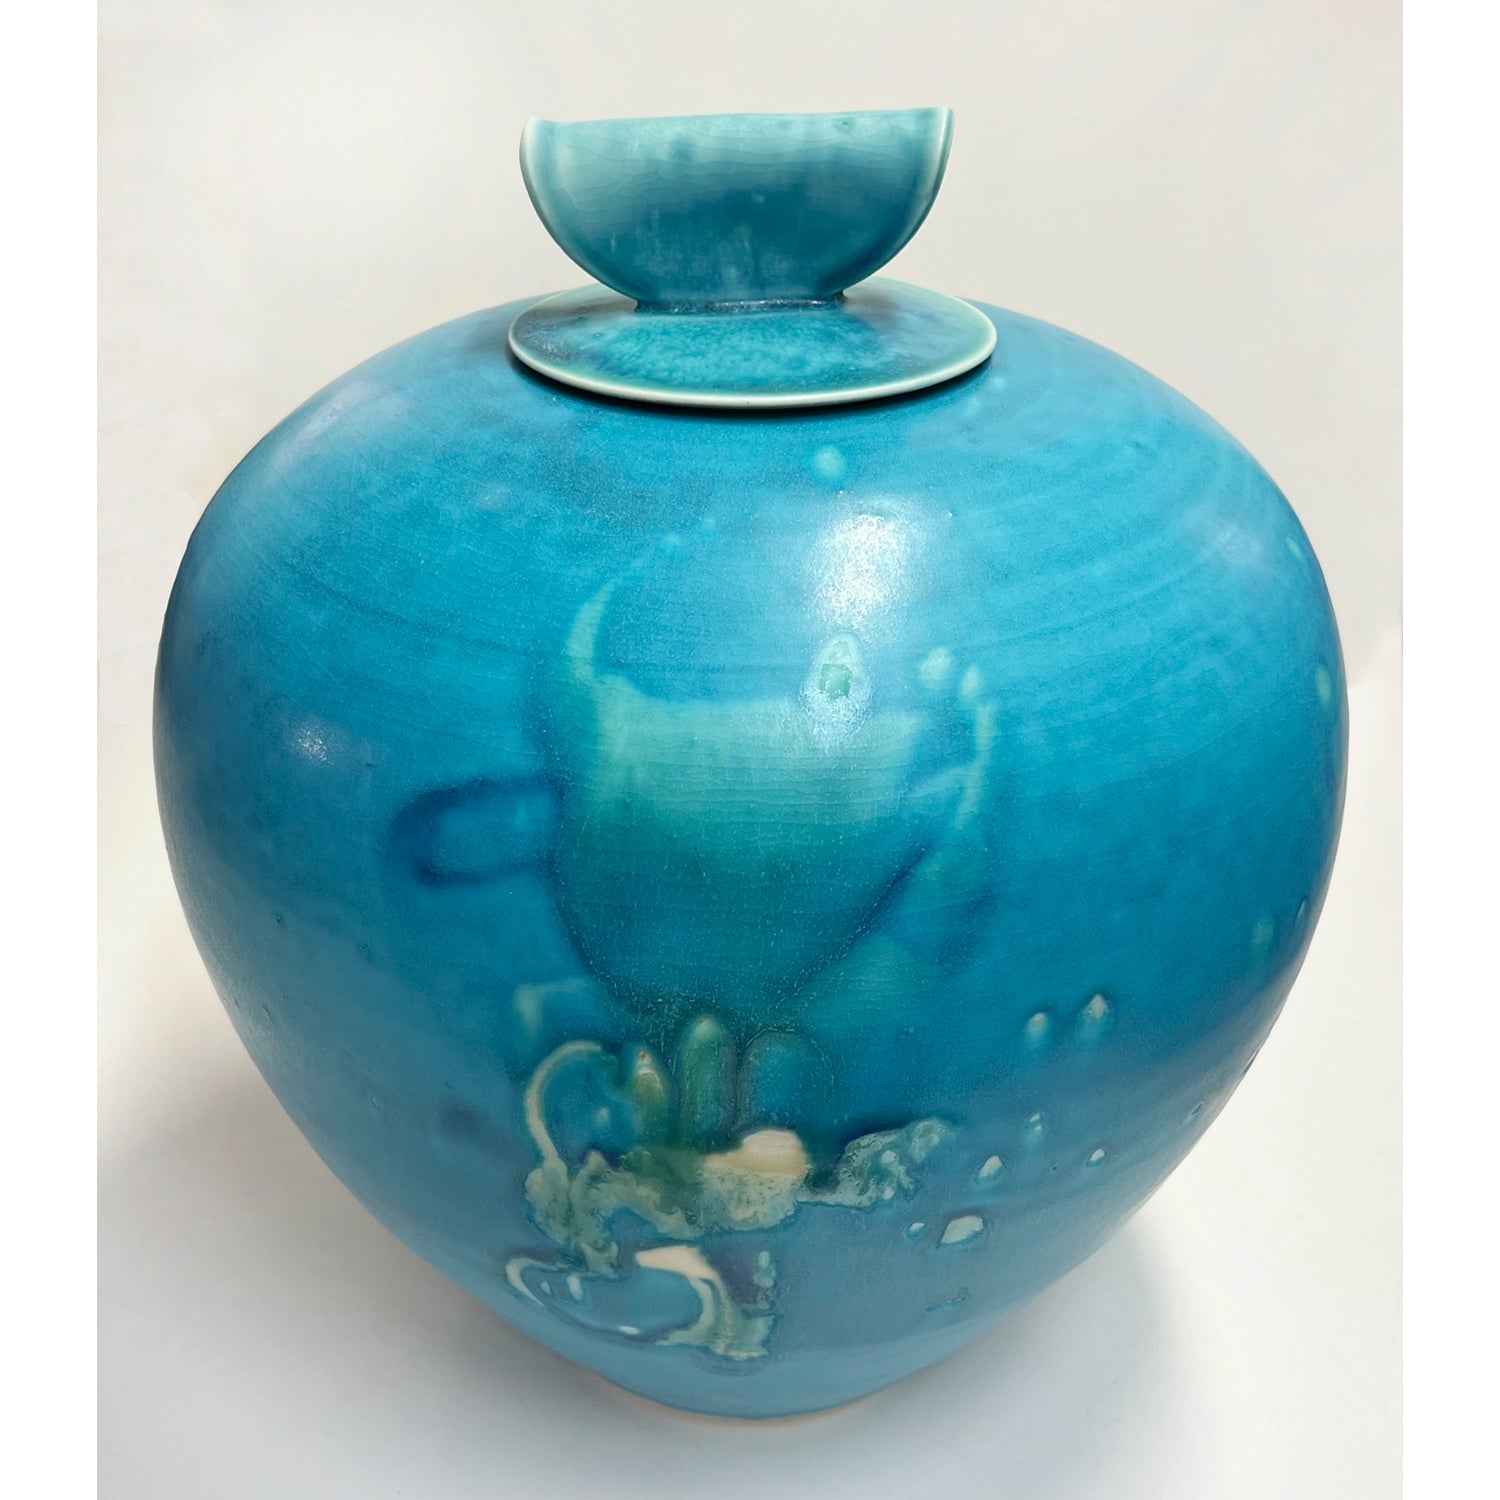 Kayo O'Young - Lidded Turquoise Vase, 12" x 9.5" x 9.5"